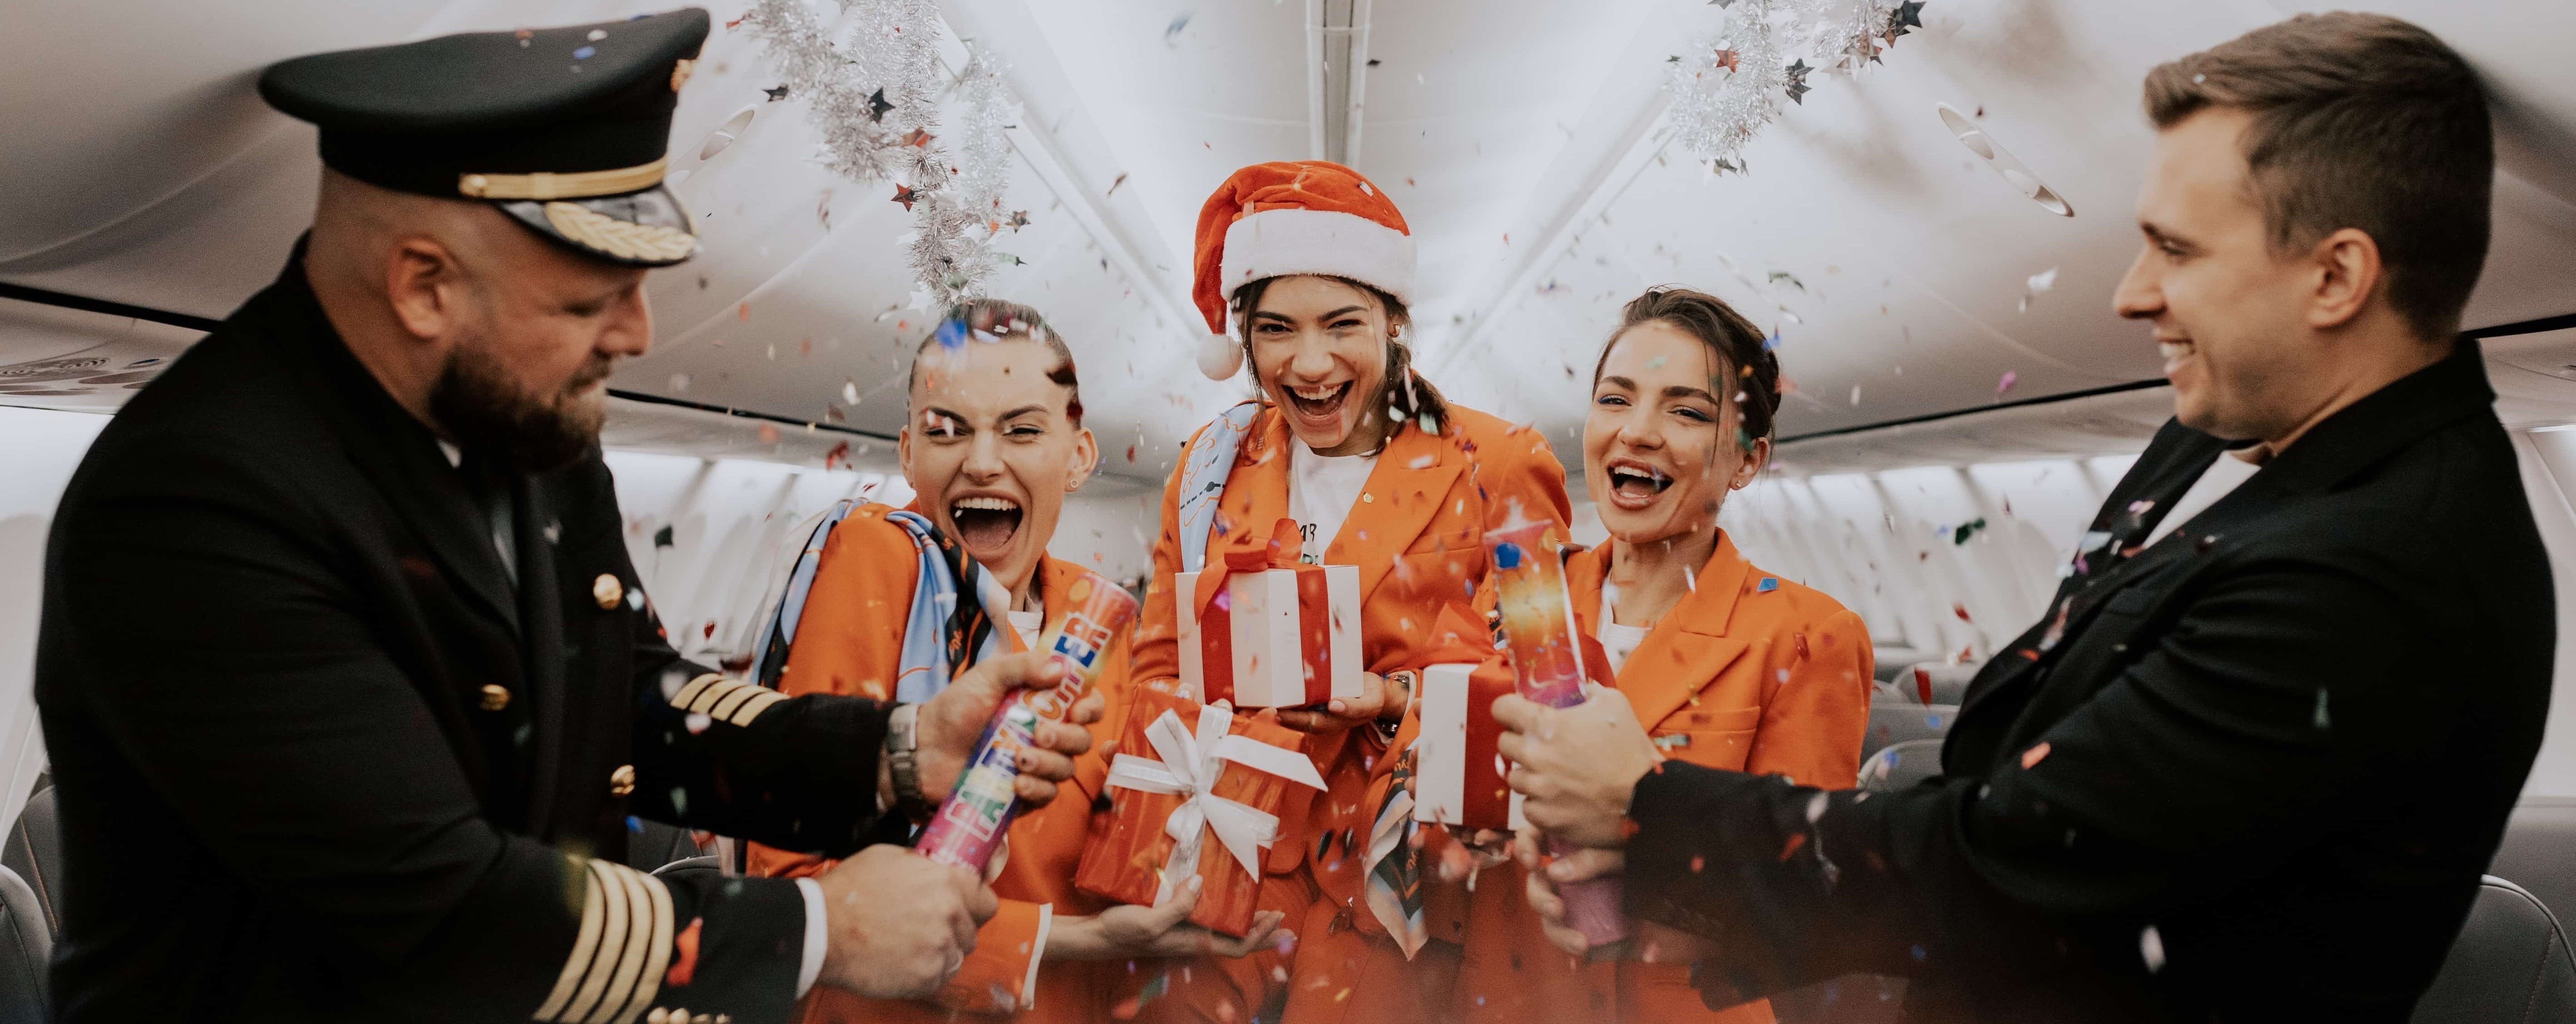 Декабрьские новости SkyUp: еще больше новых рейсов, победа в номинации "Сердце авиапространства" и Санта собственной персоной на борту